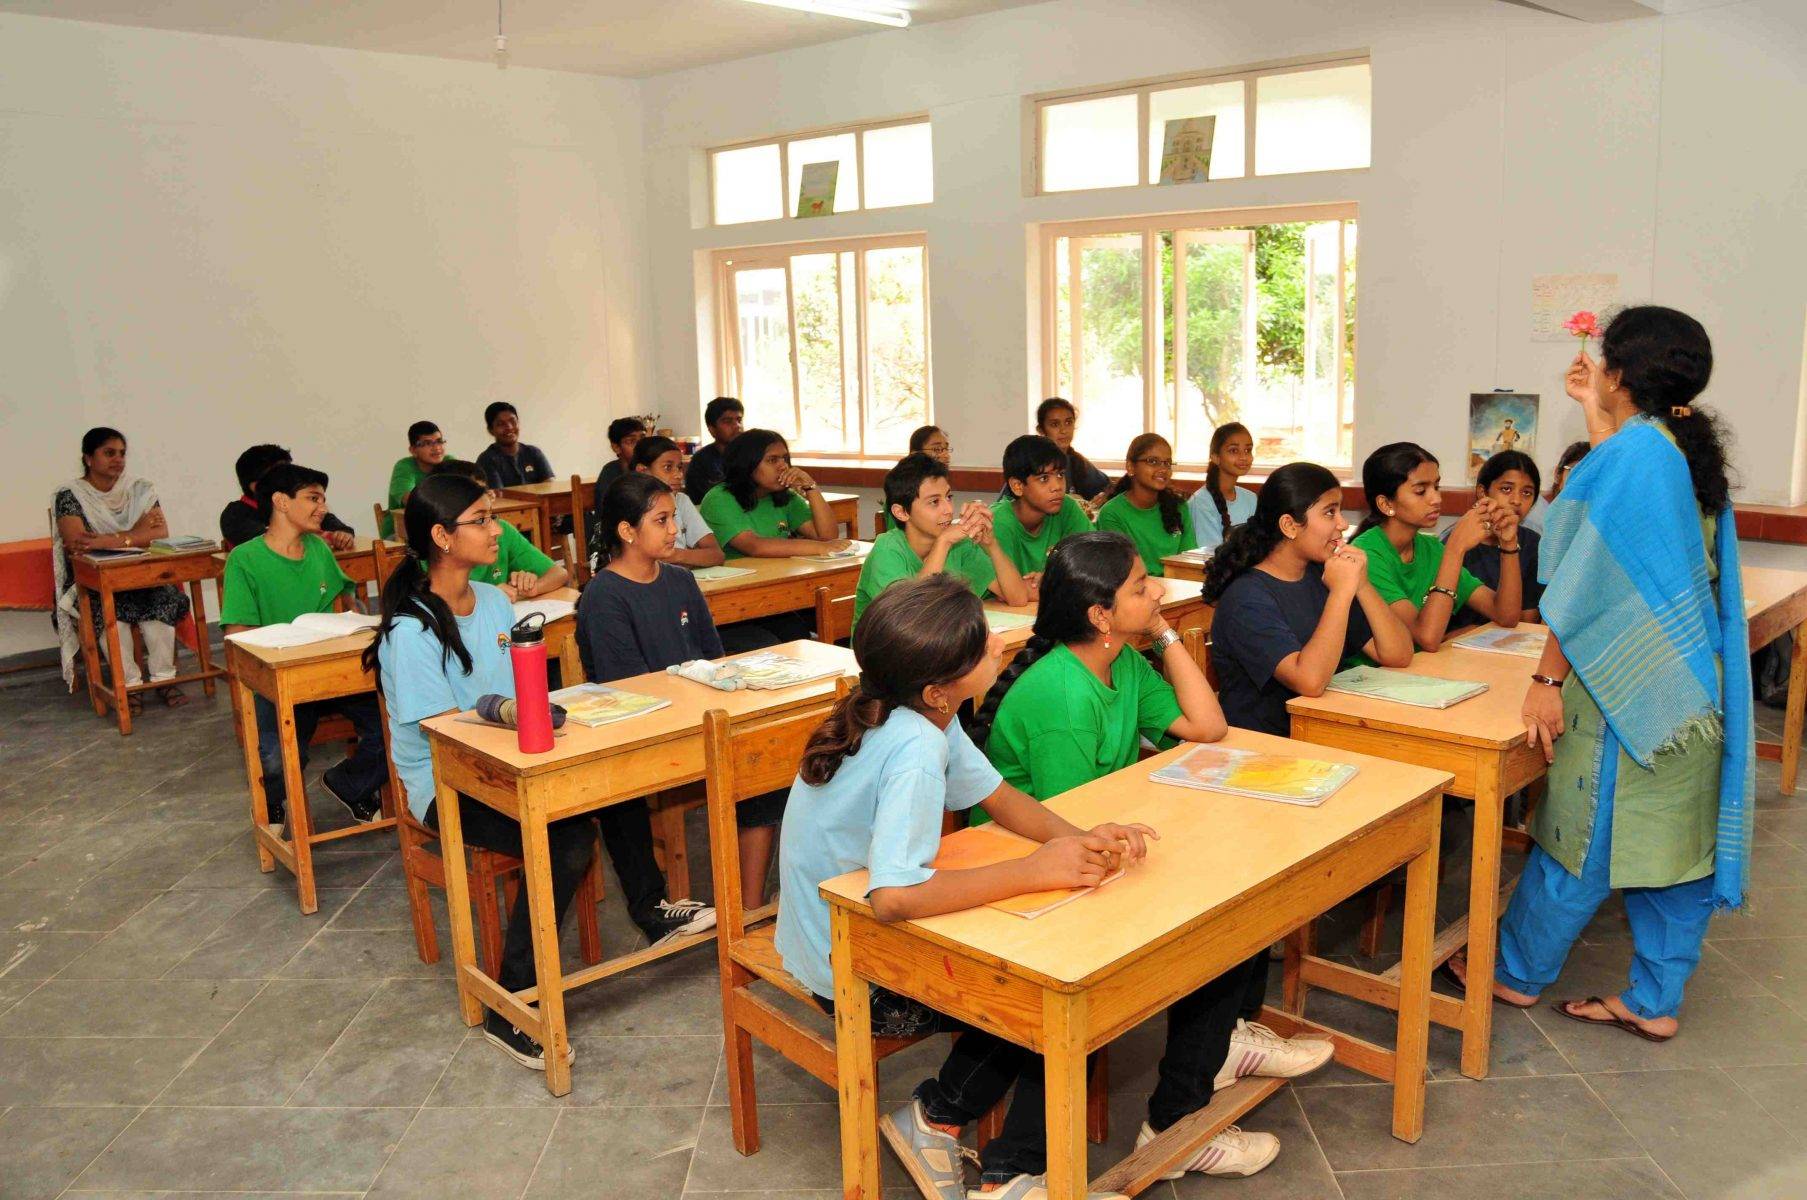 Образование в индии — третье место после китая и сша